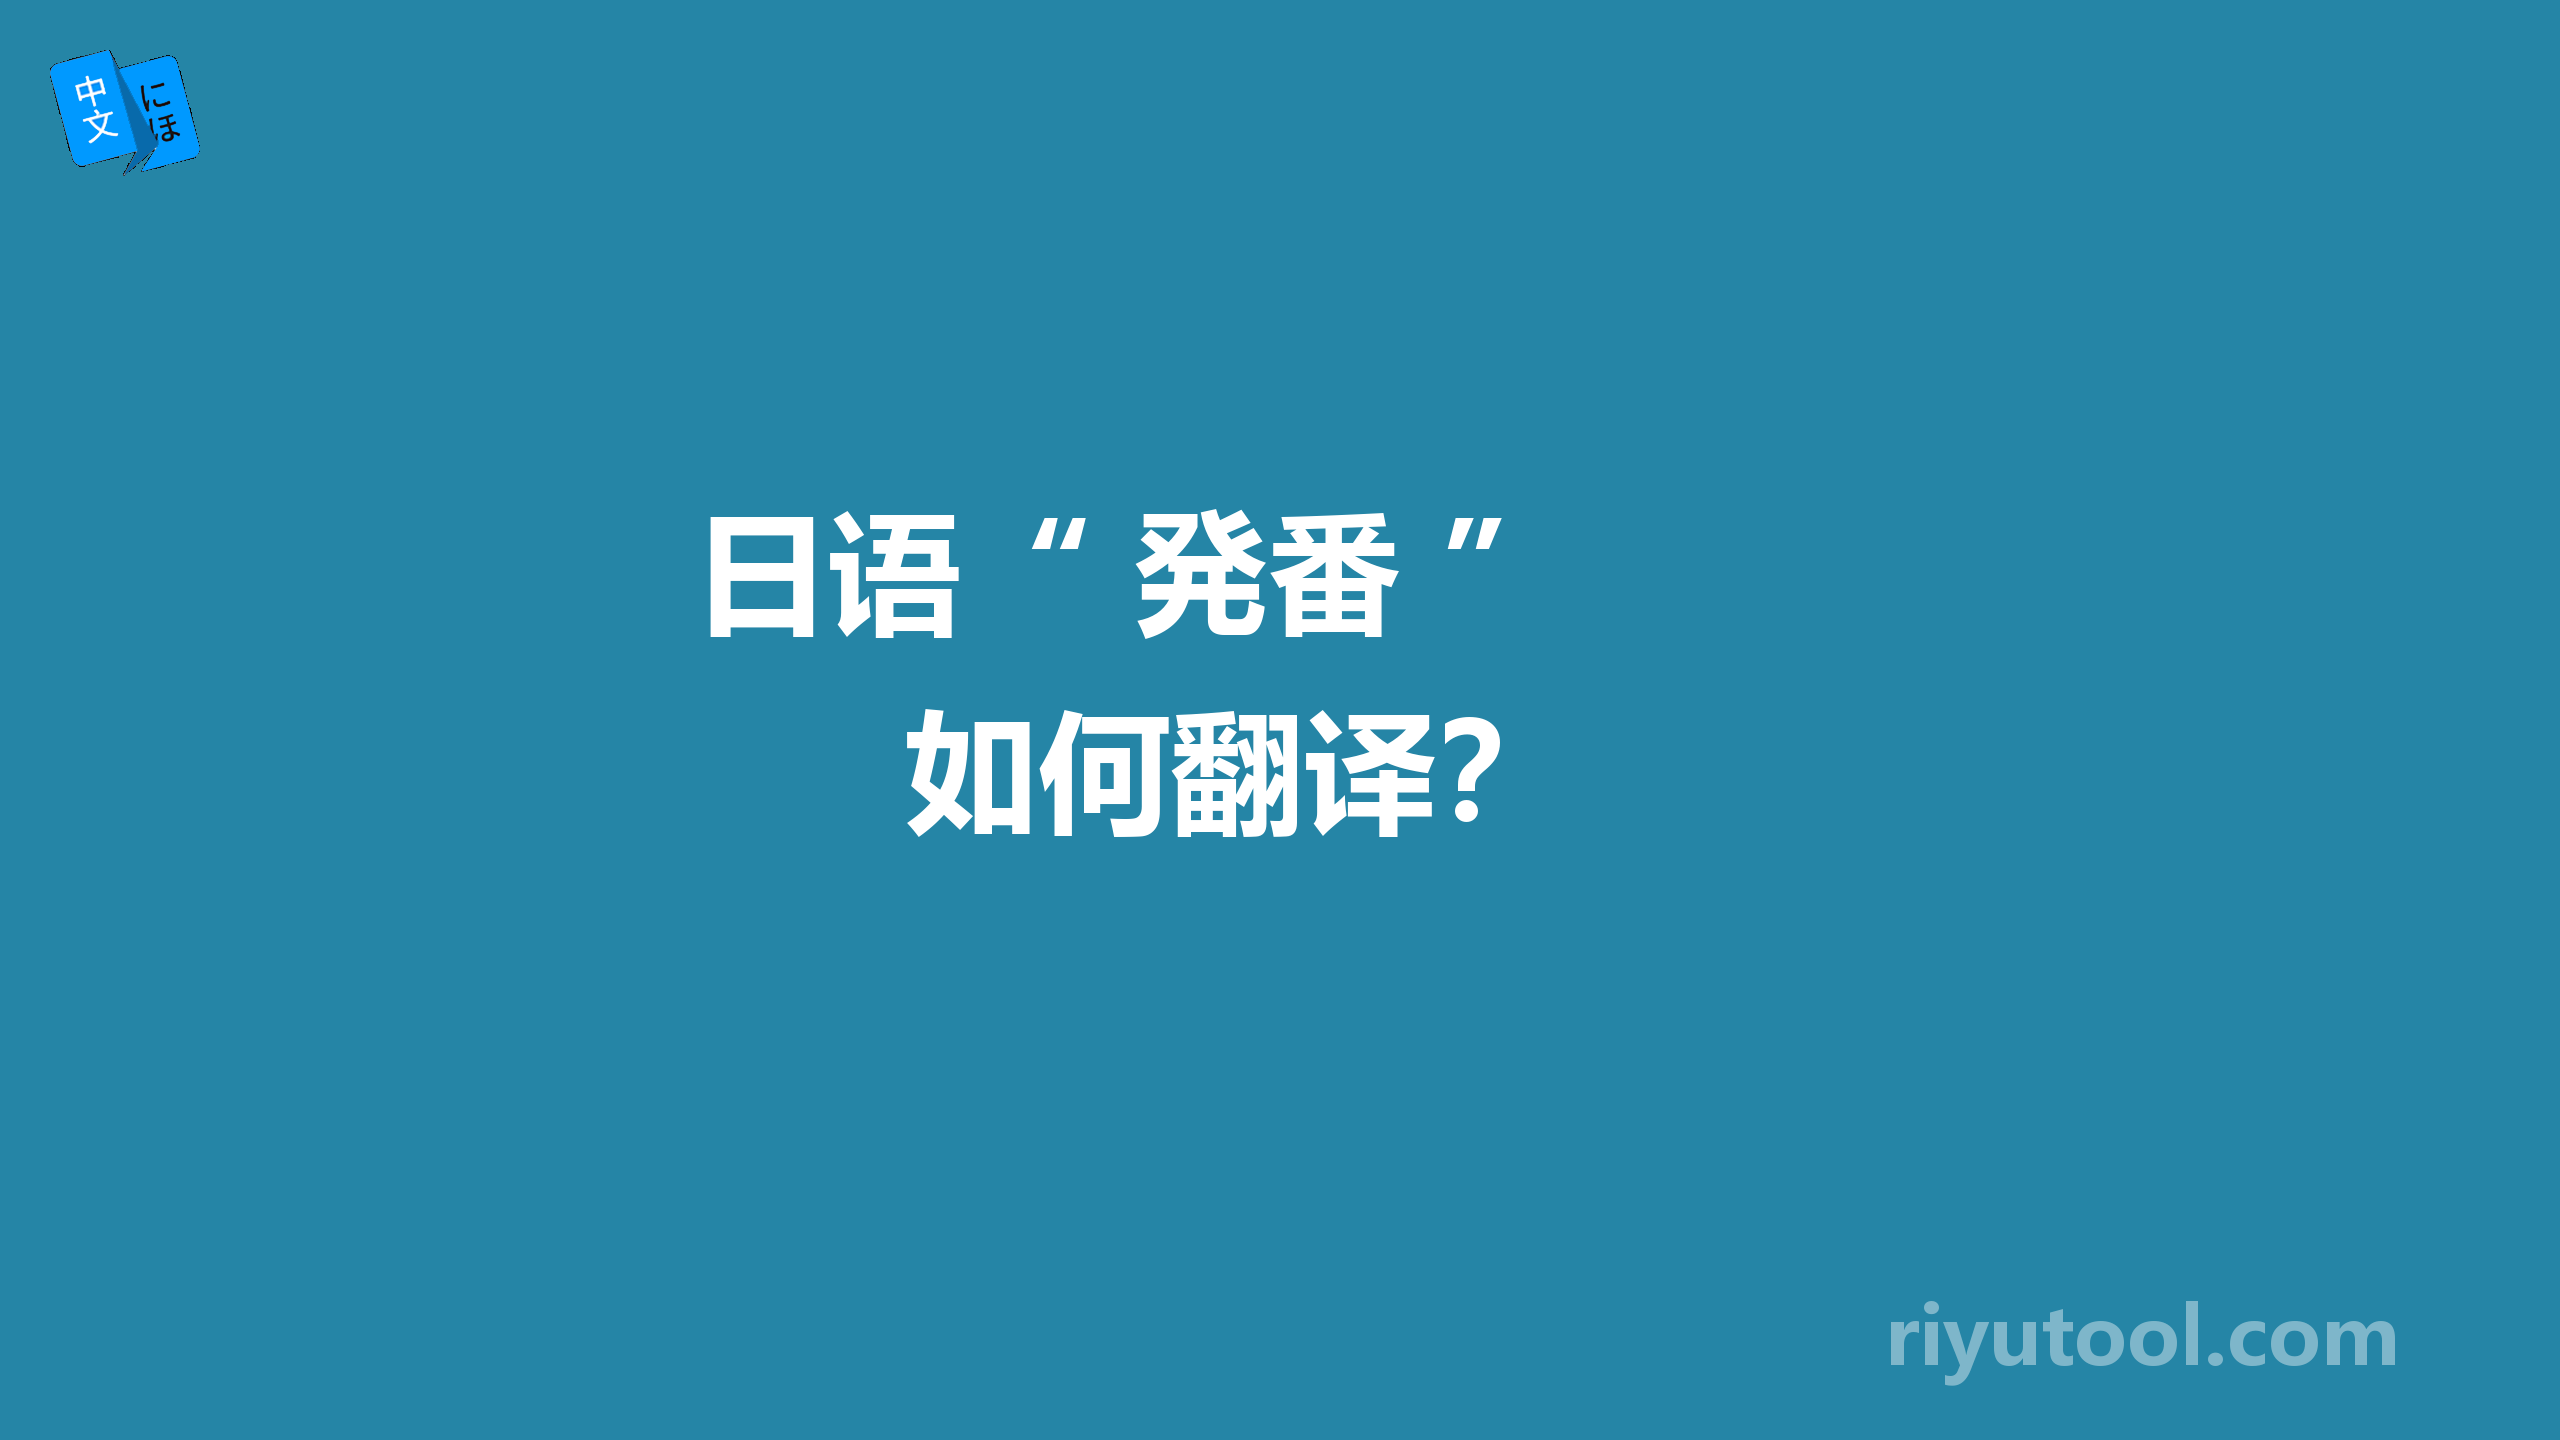  日语“ 発番 ” 如何翻译？ 